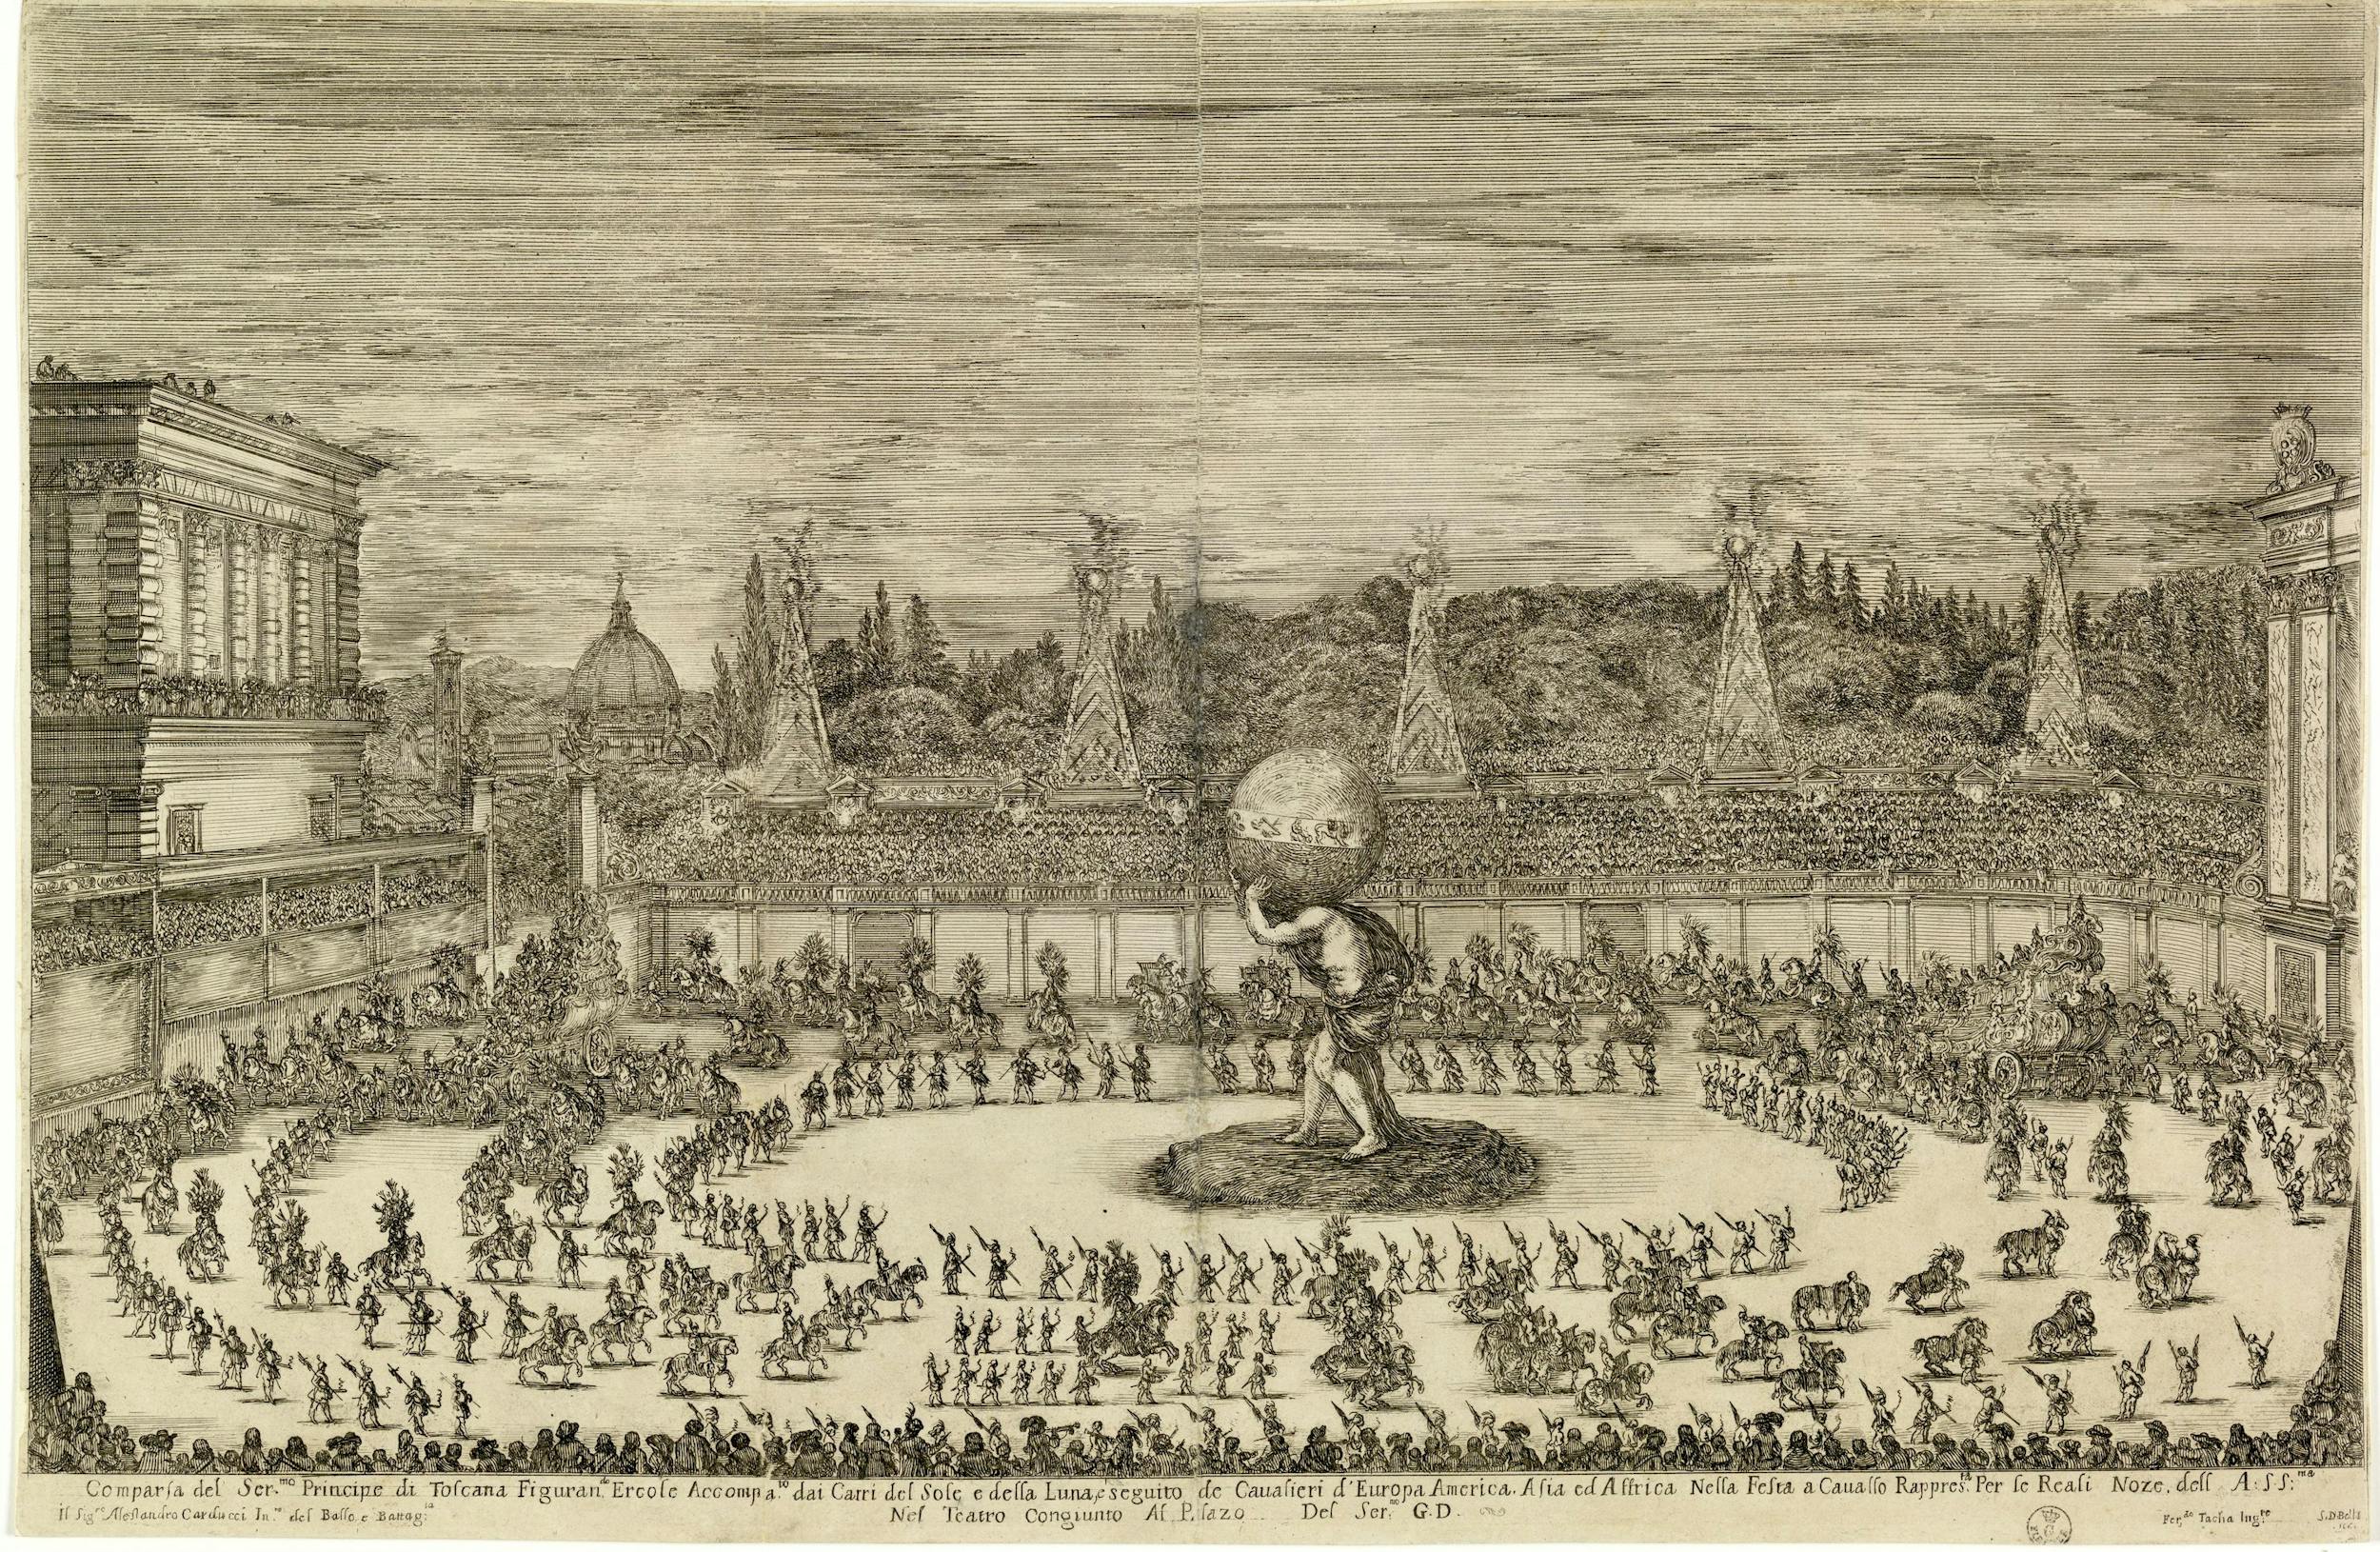 Il mondo festeggiante, Carducci, Della Bella, Tacca, acquaforte, 1661, Firenze, Gabinetto Disegni e Stampe degli Uffizi